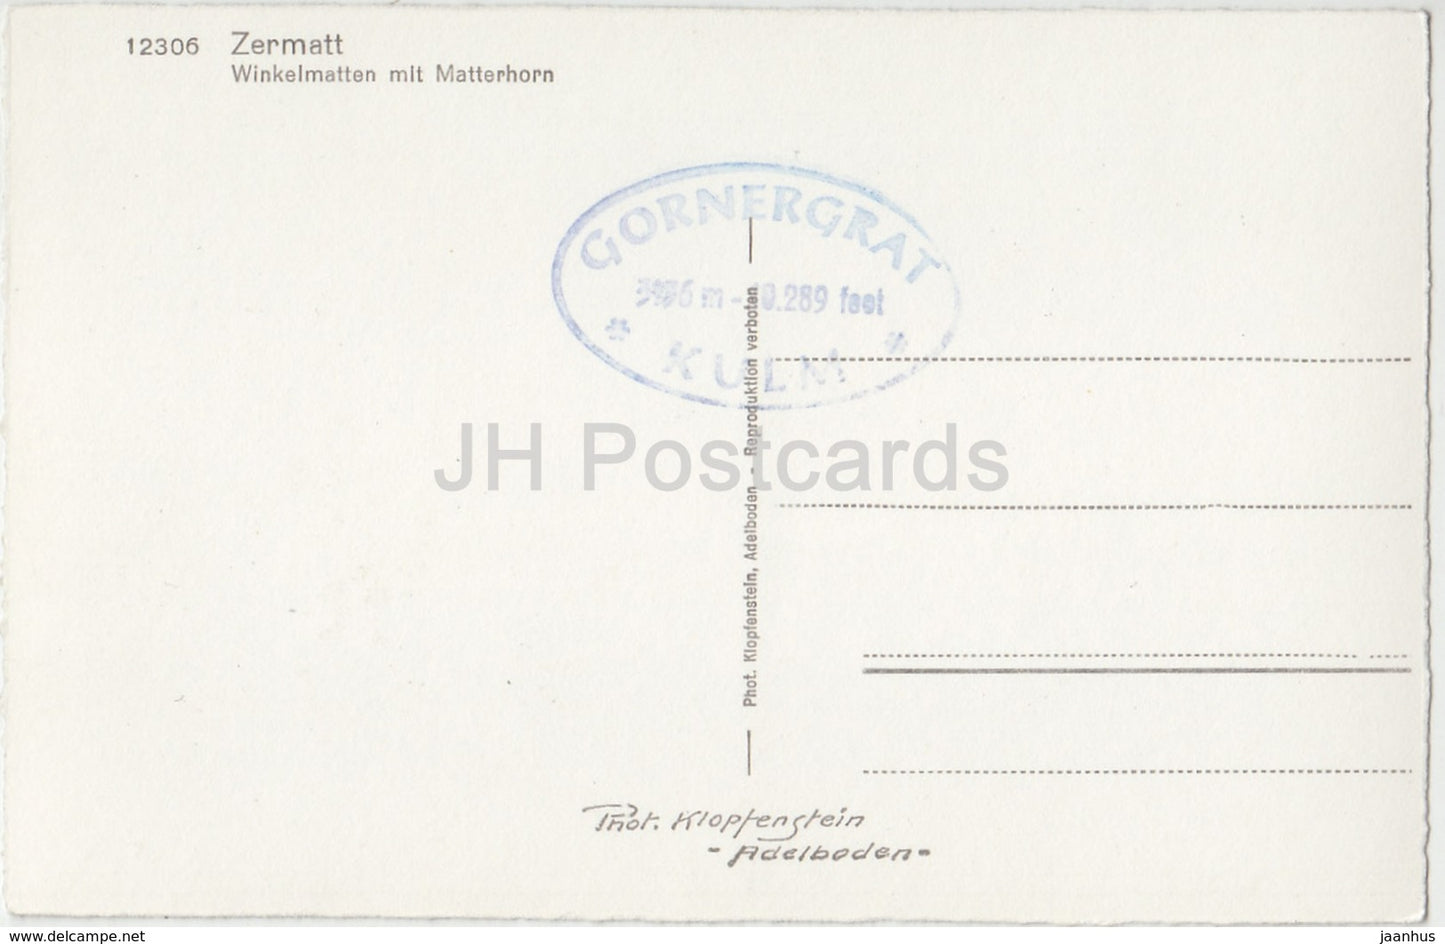 Zermatt - Winkelmatten mit Mattehorn - 12306 - Switzerland - old postcard - unused